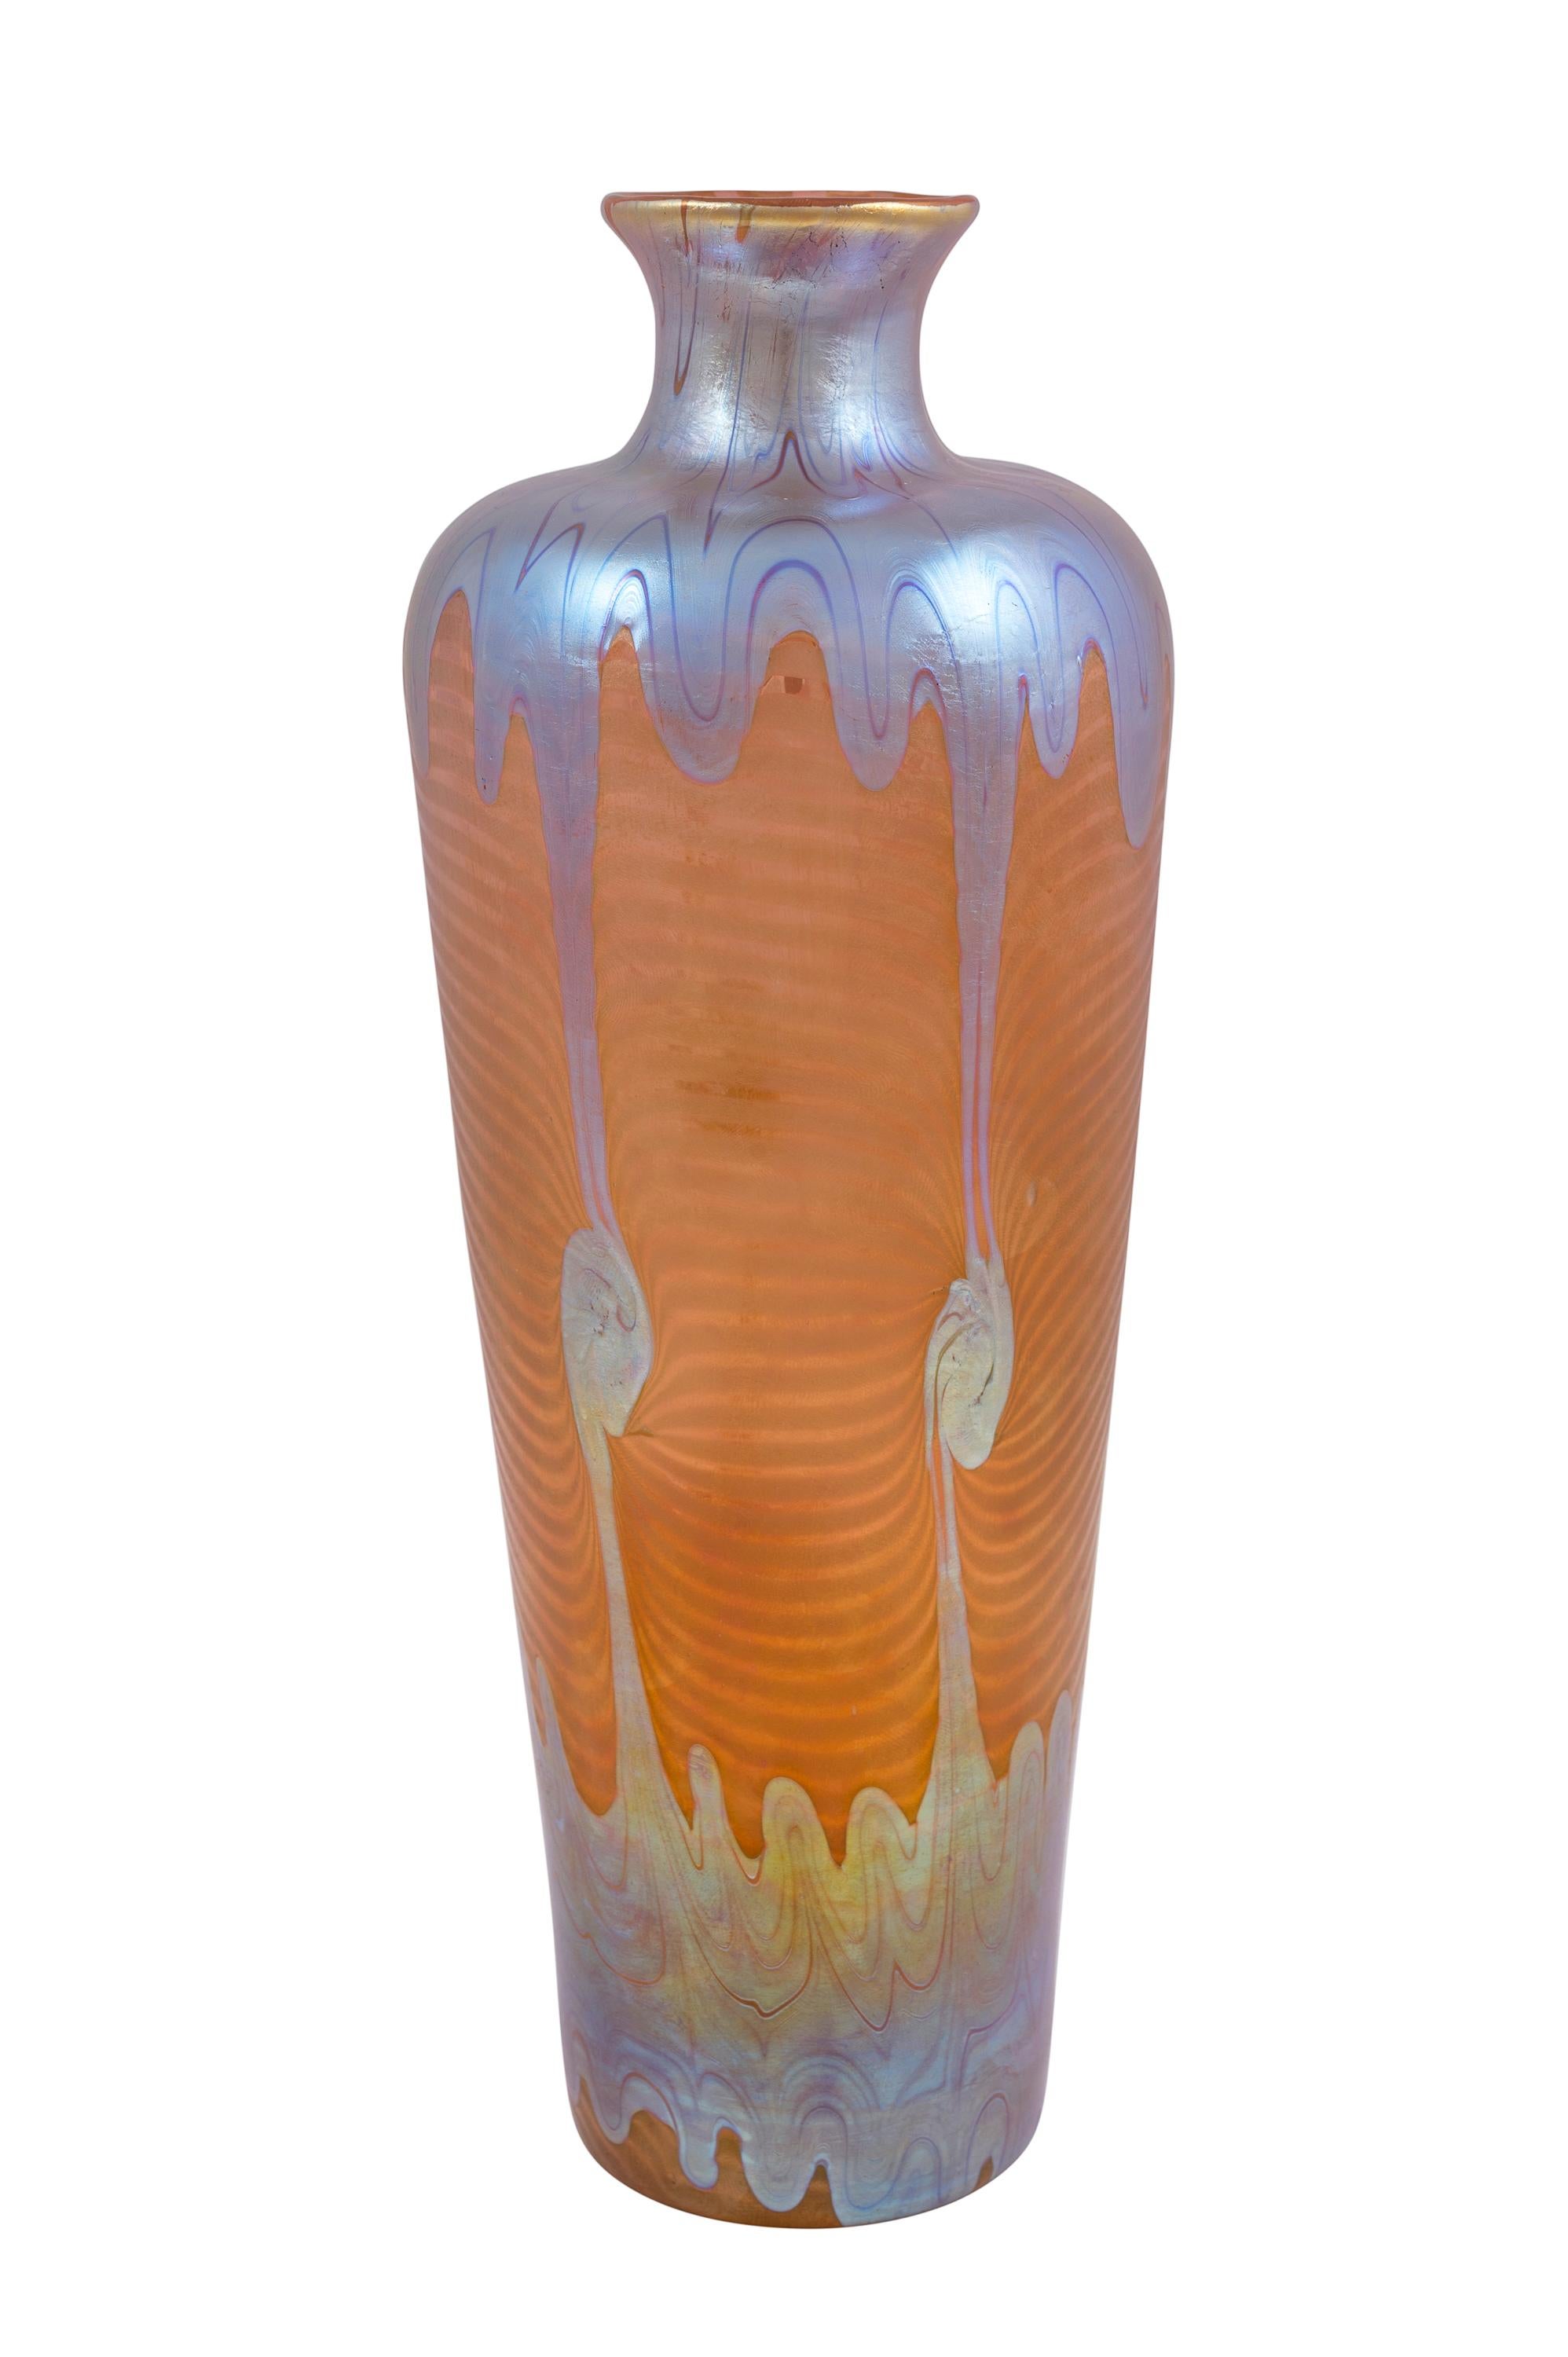 Glass vase, manufactured by Johann Loetz Witwe, PG 1/214 decoration, ca. 1901, signed Art Nouveau, Jugendstil, Art Deco, art glass, iridescent glass, orange, blue, silver

signed 